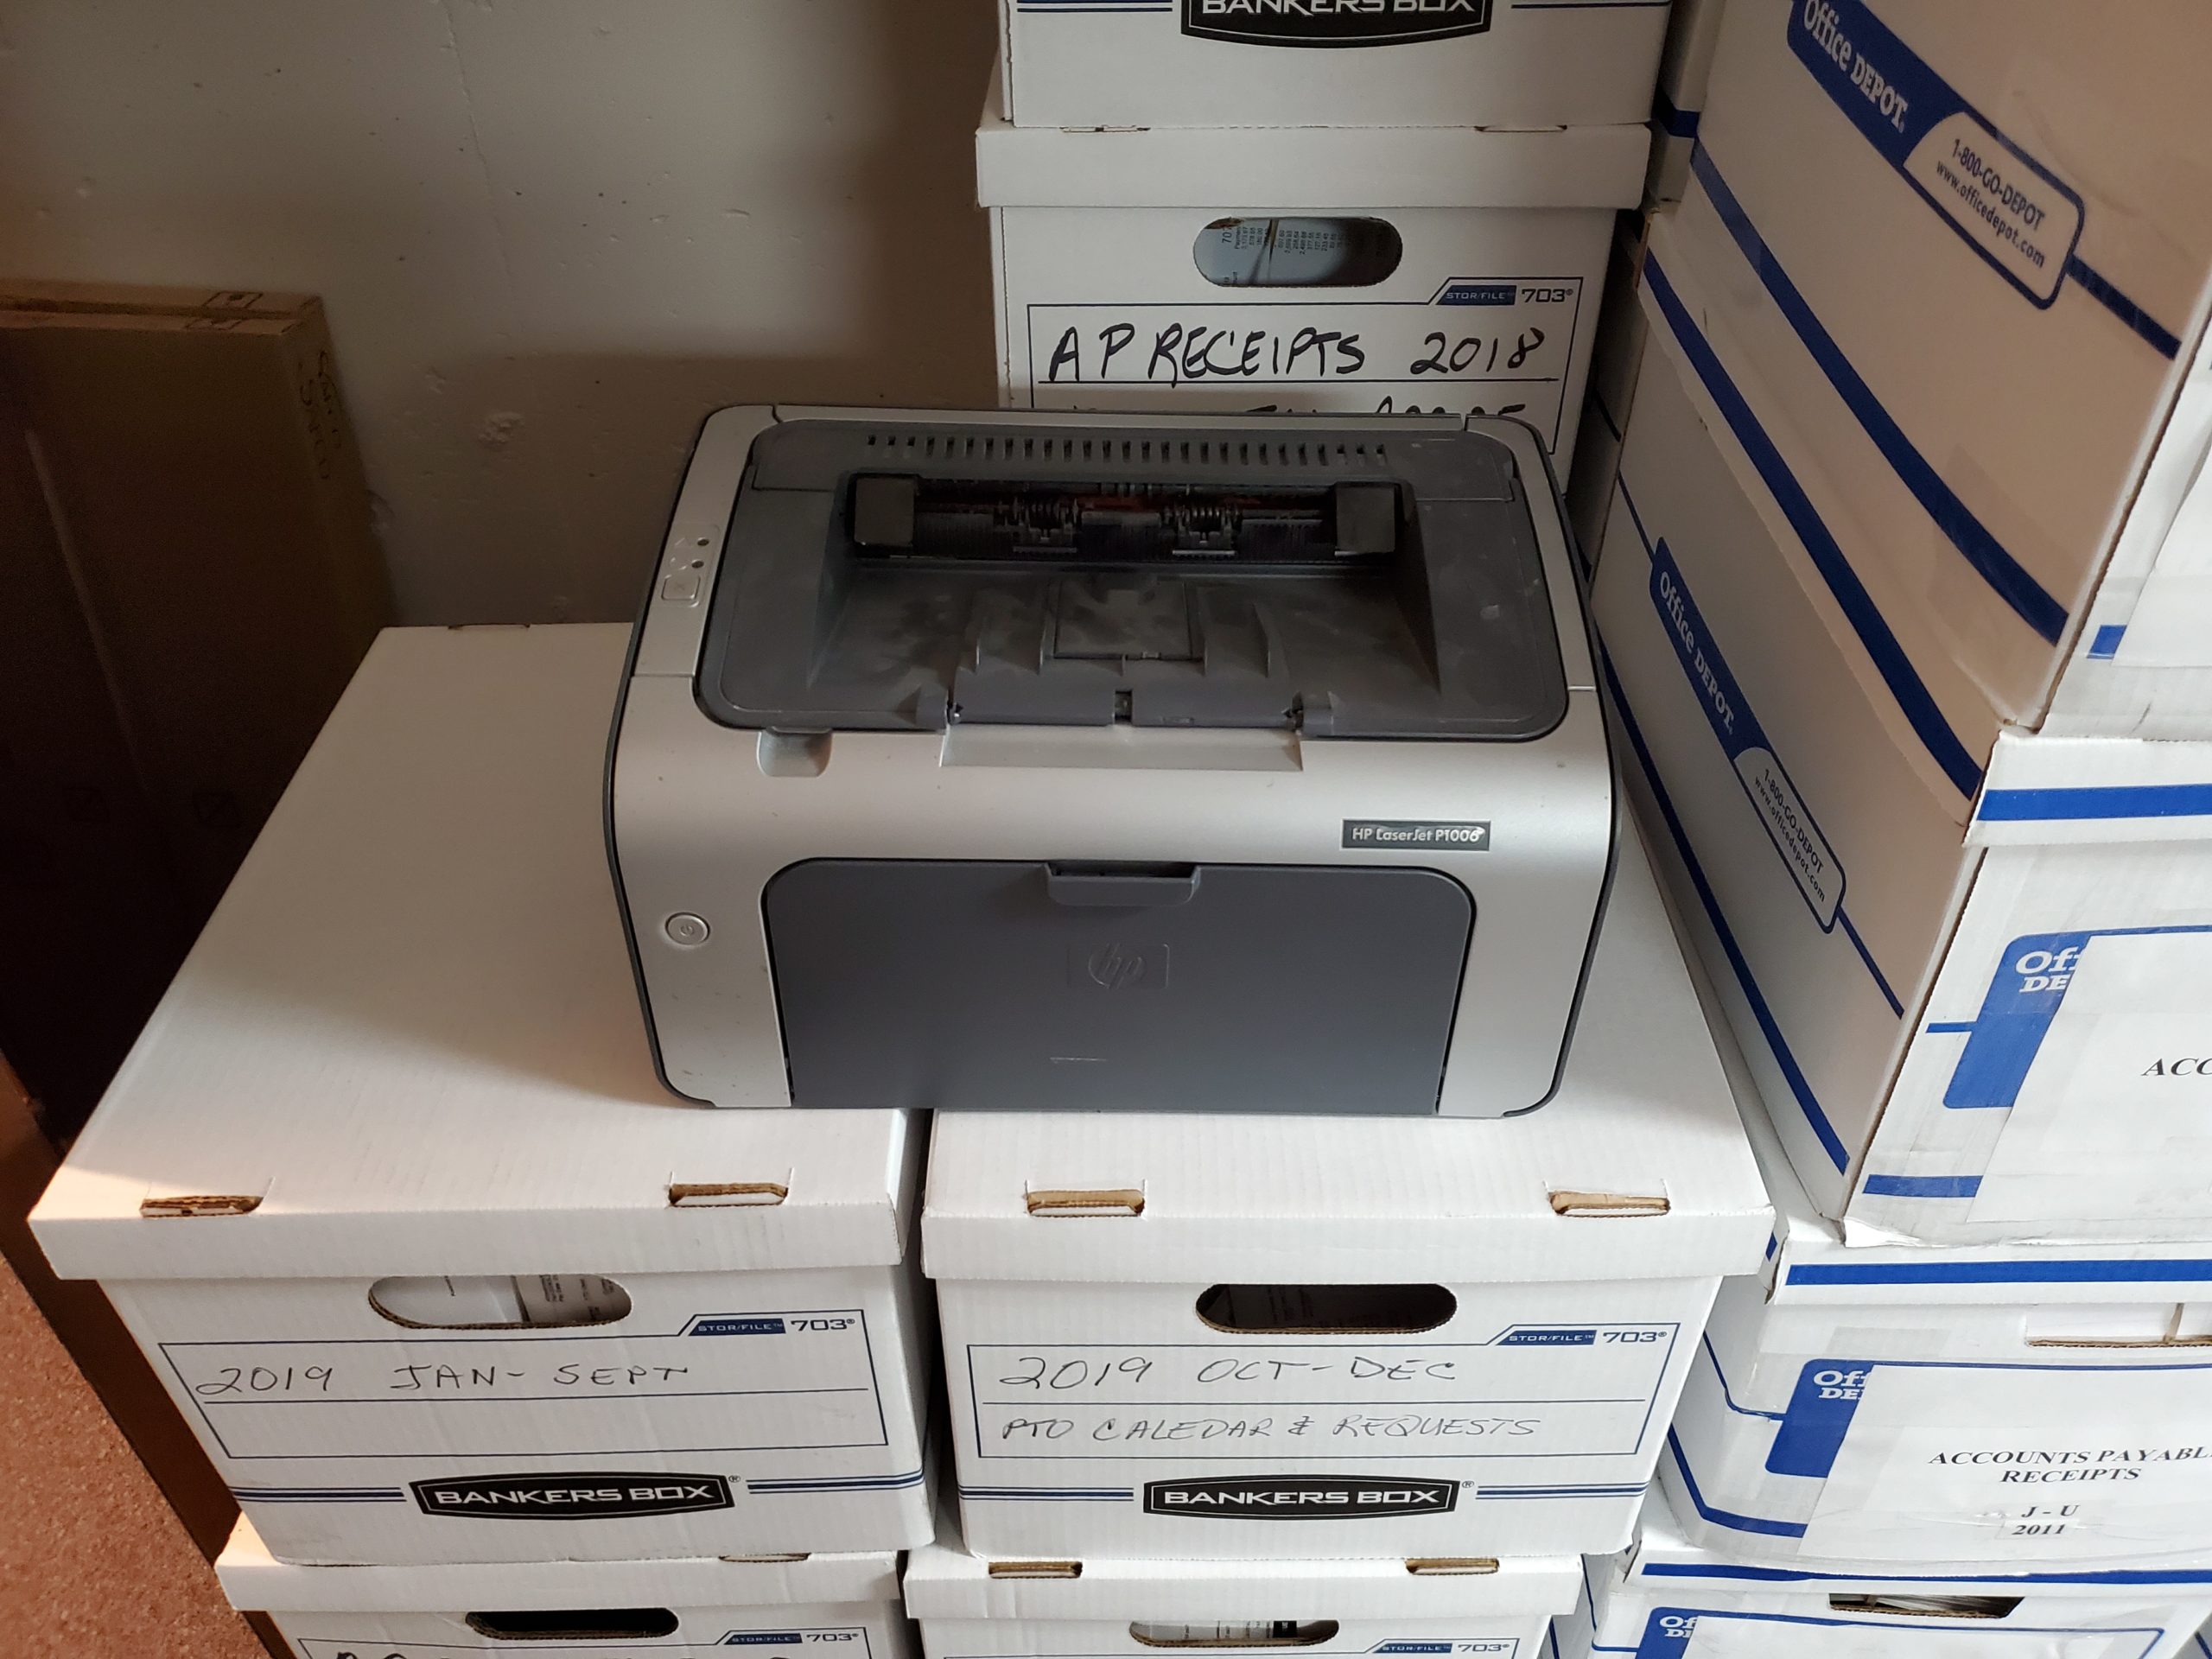 LaserJet P1006 - Valley Offset Printing